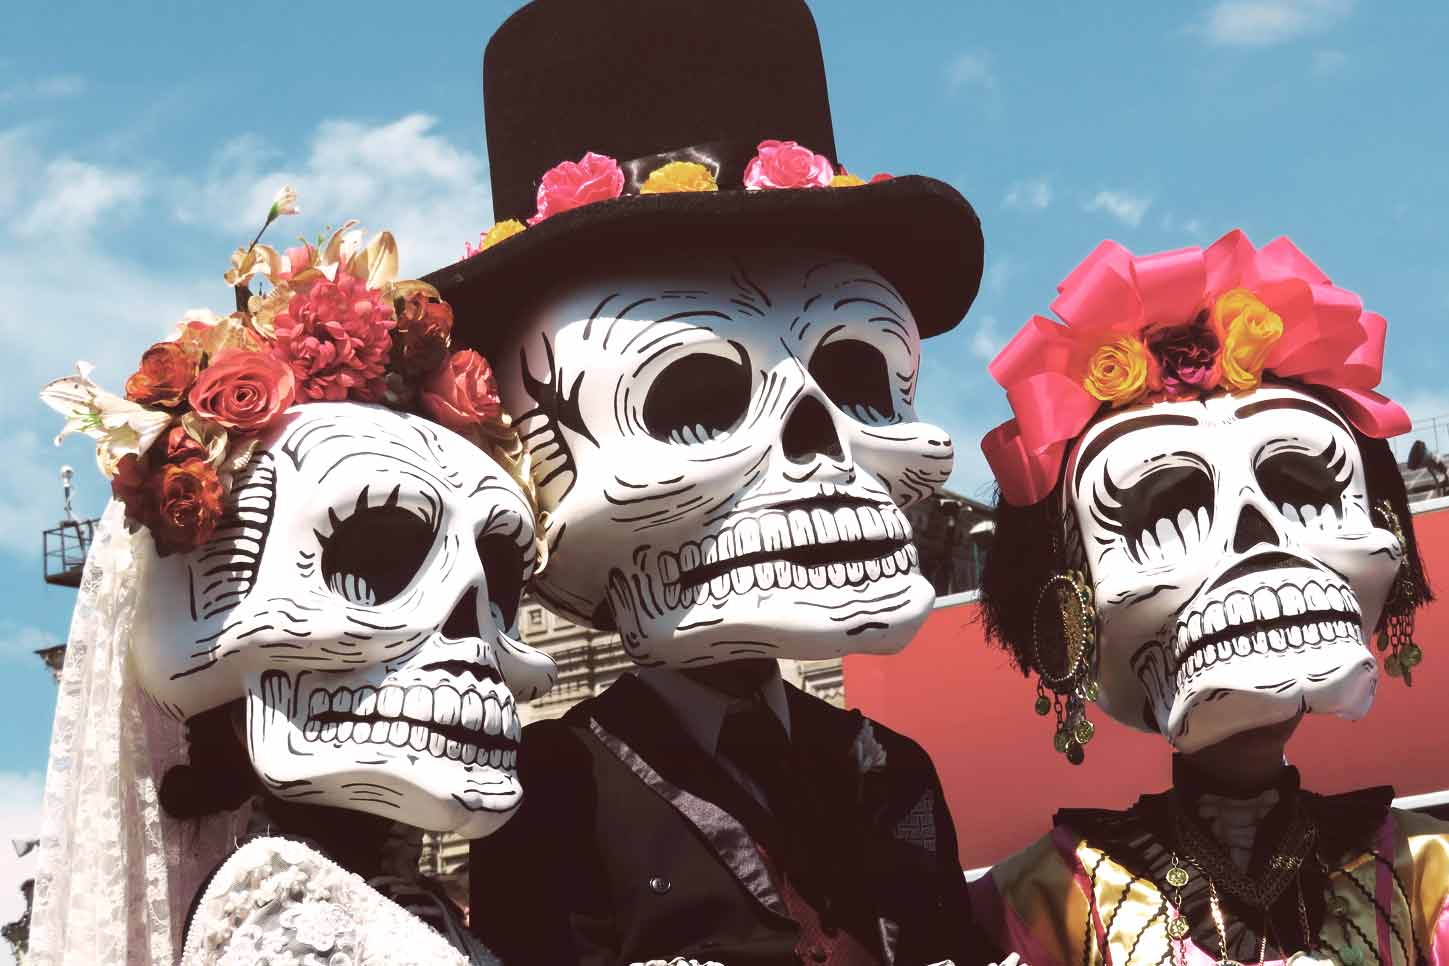 Trueno Excremento Feudo Cultura mexicana: tradiciones y costumbres de México